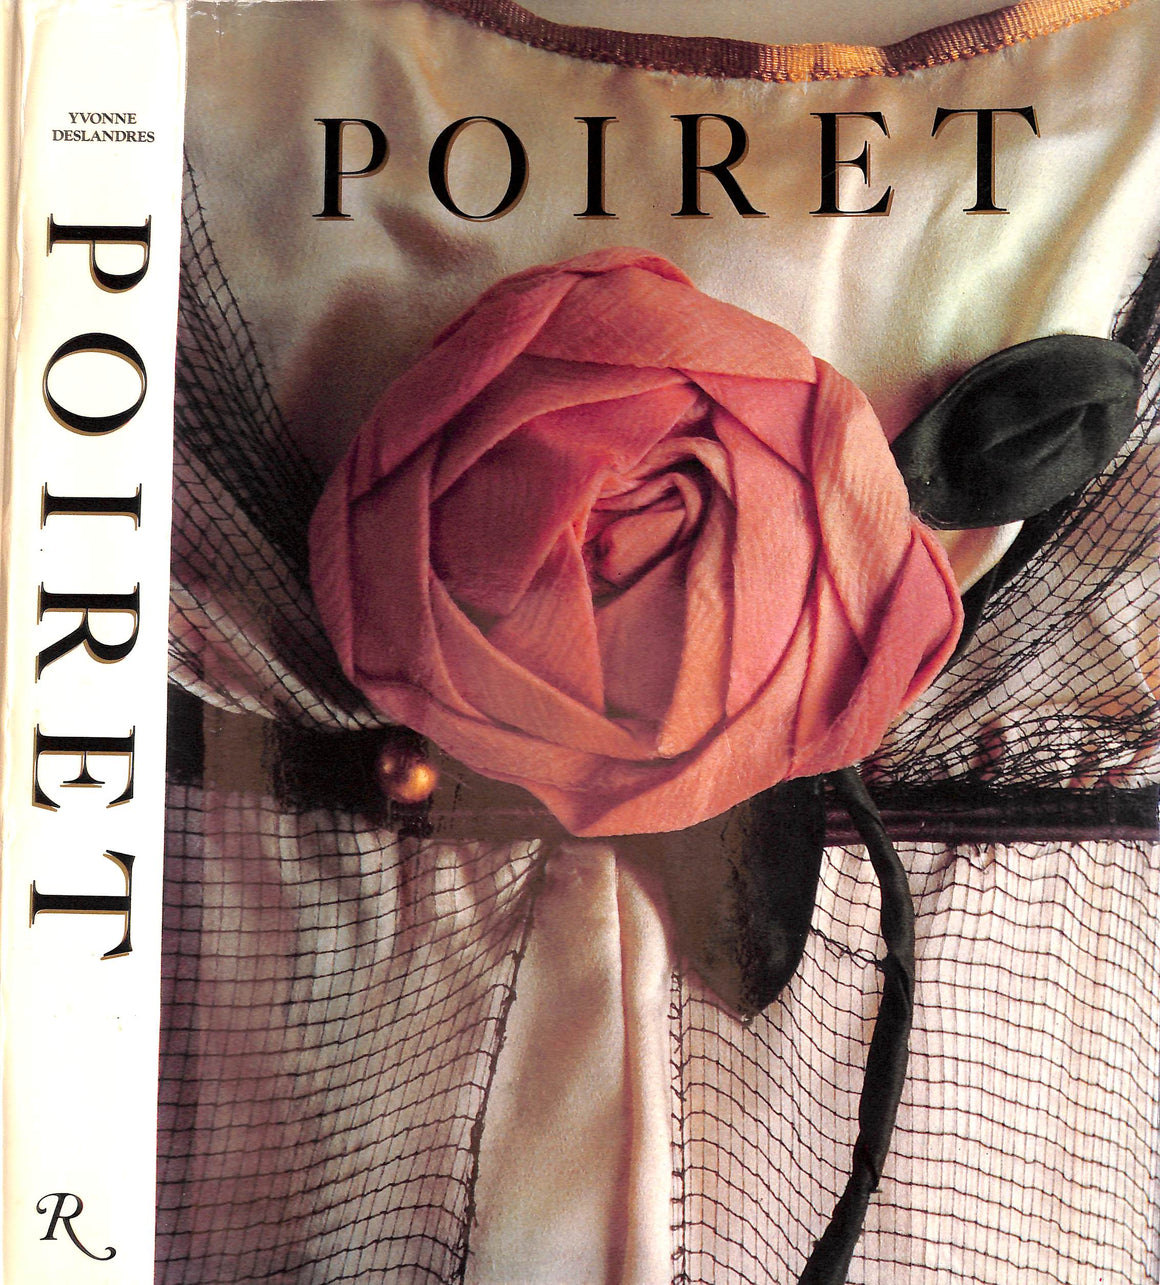 "Poiret" 1987 DESLANDRES, Yvonne